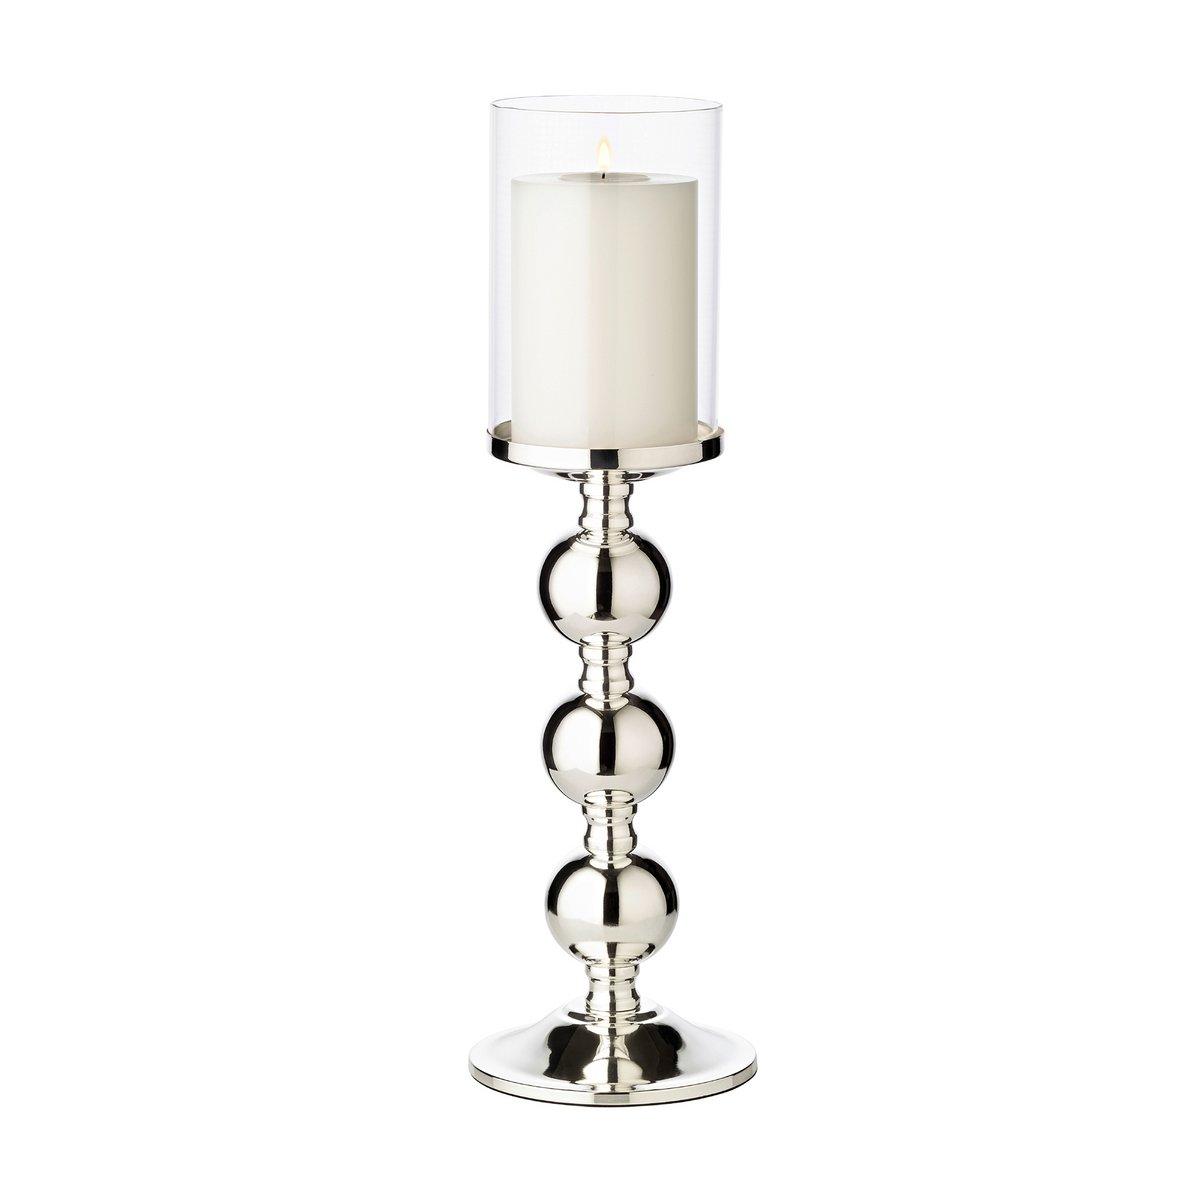 EDZARD Leuchter Kerzenleuchter Bamboo, edel versilbert, anlaufgeschützt, mit Glas, Höhe 43 cm - HomeDesign Knaus